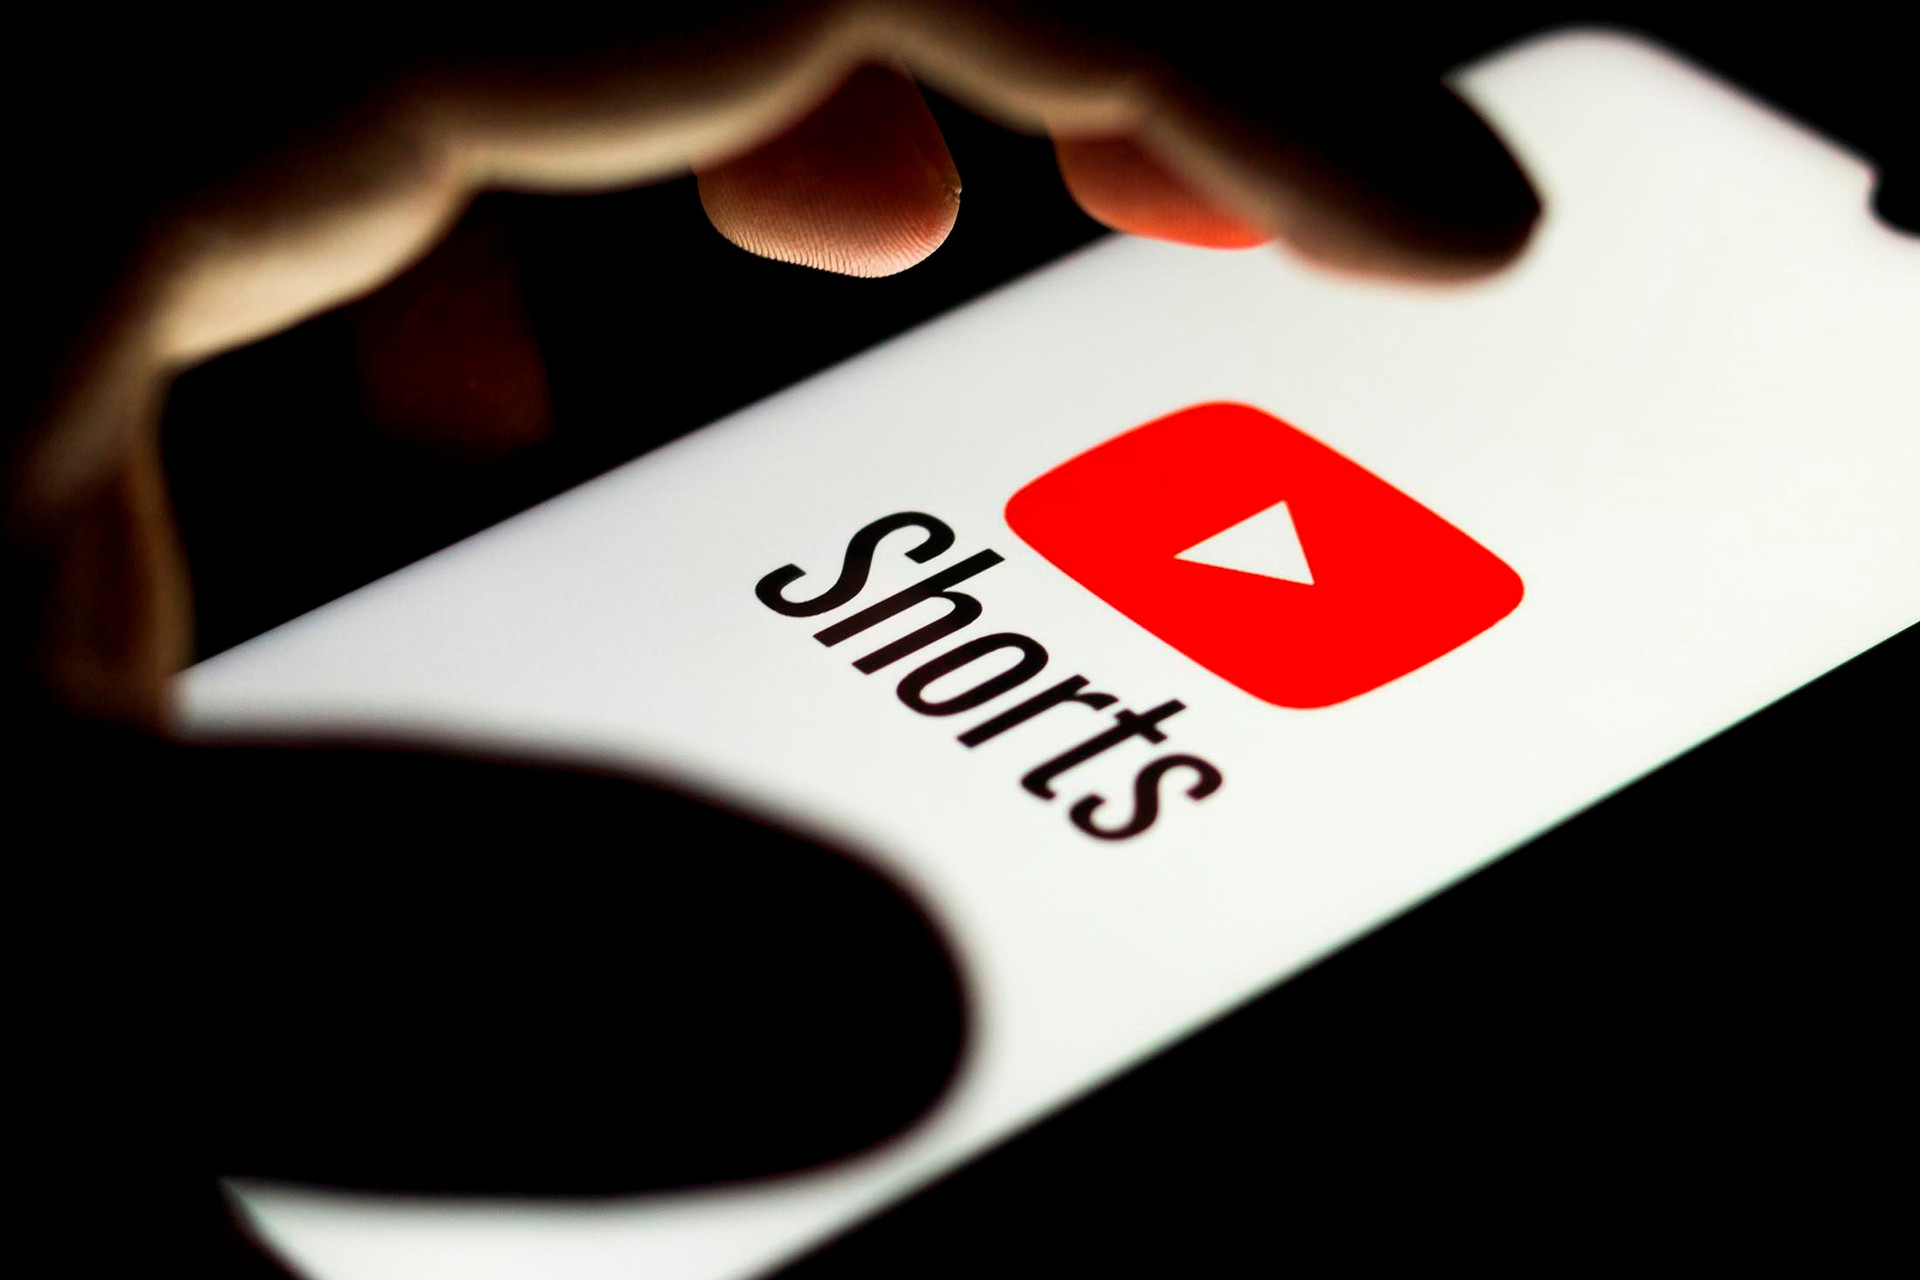 Youtube Shorts - ‘Gà vàng’ của Google: Ra liên tiếp 6 tính năng mới ‘copy’ TikTok, thành công rực rỡ vì ‘mua chuộc’ người làm nội dung - Ảnh 1.